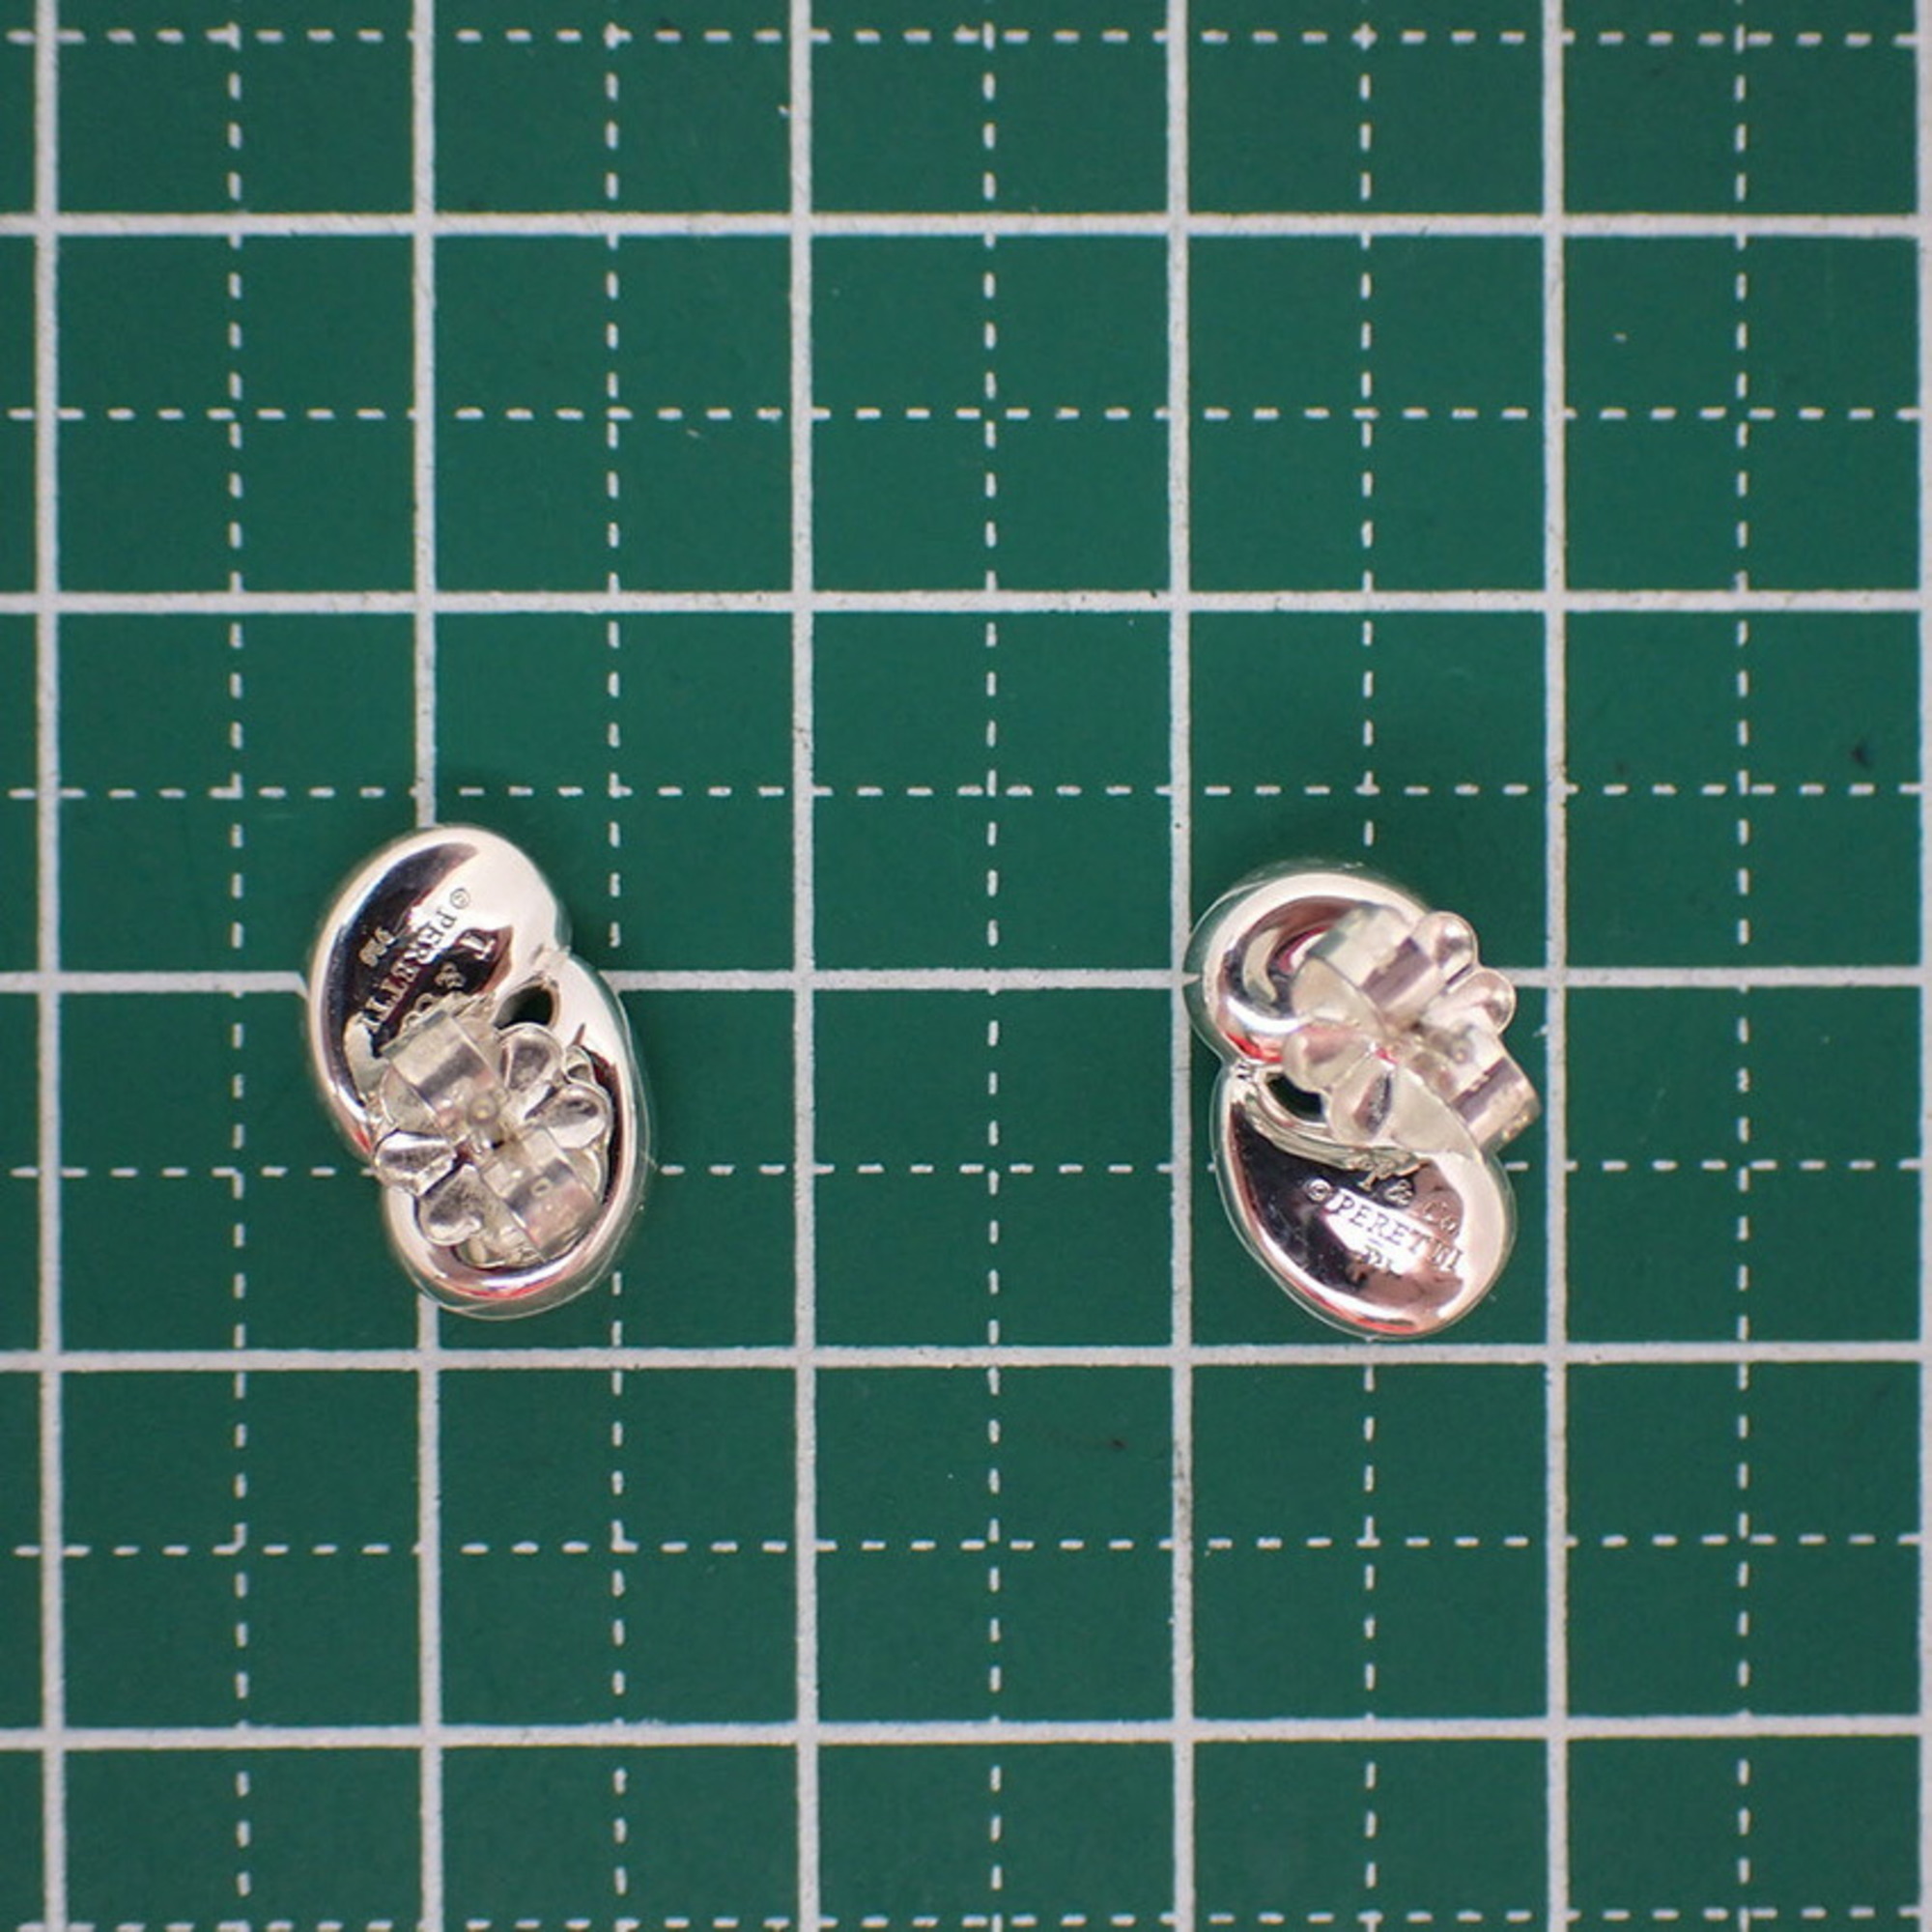 TIFFANY Tiffany 925 double teardrop earrings